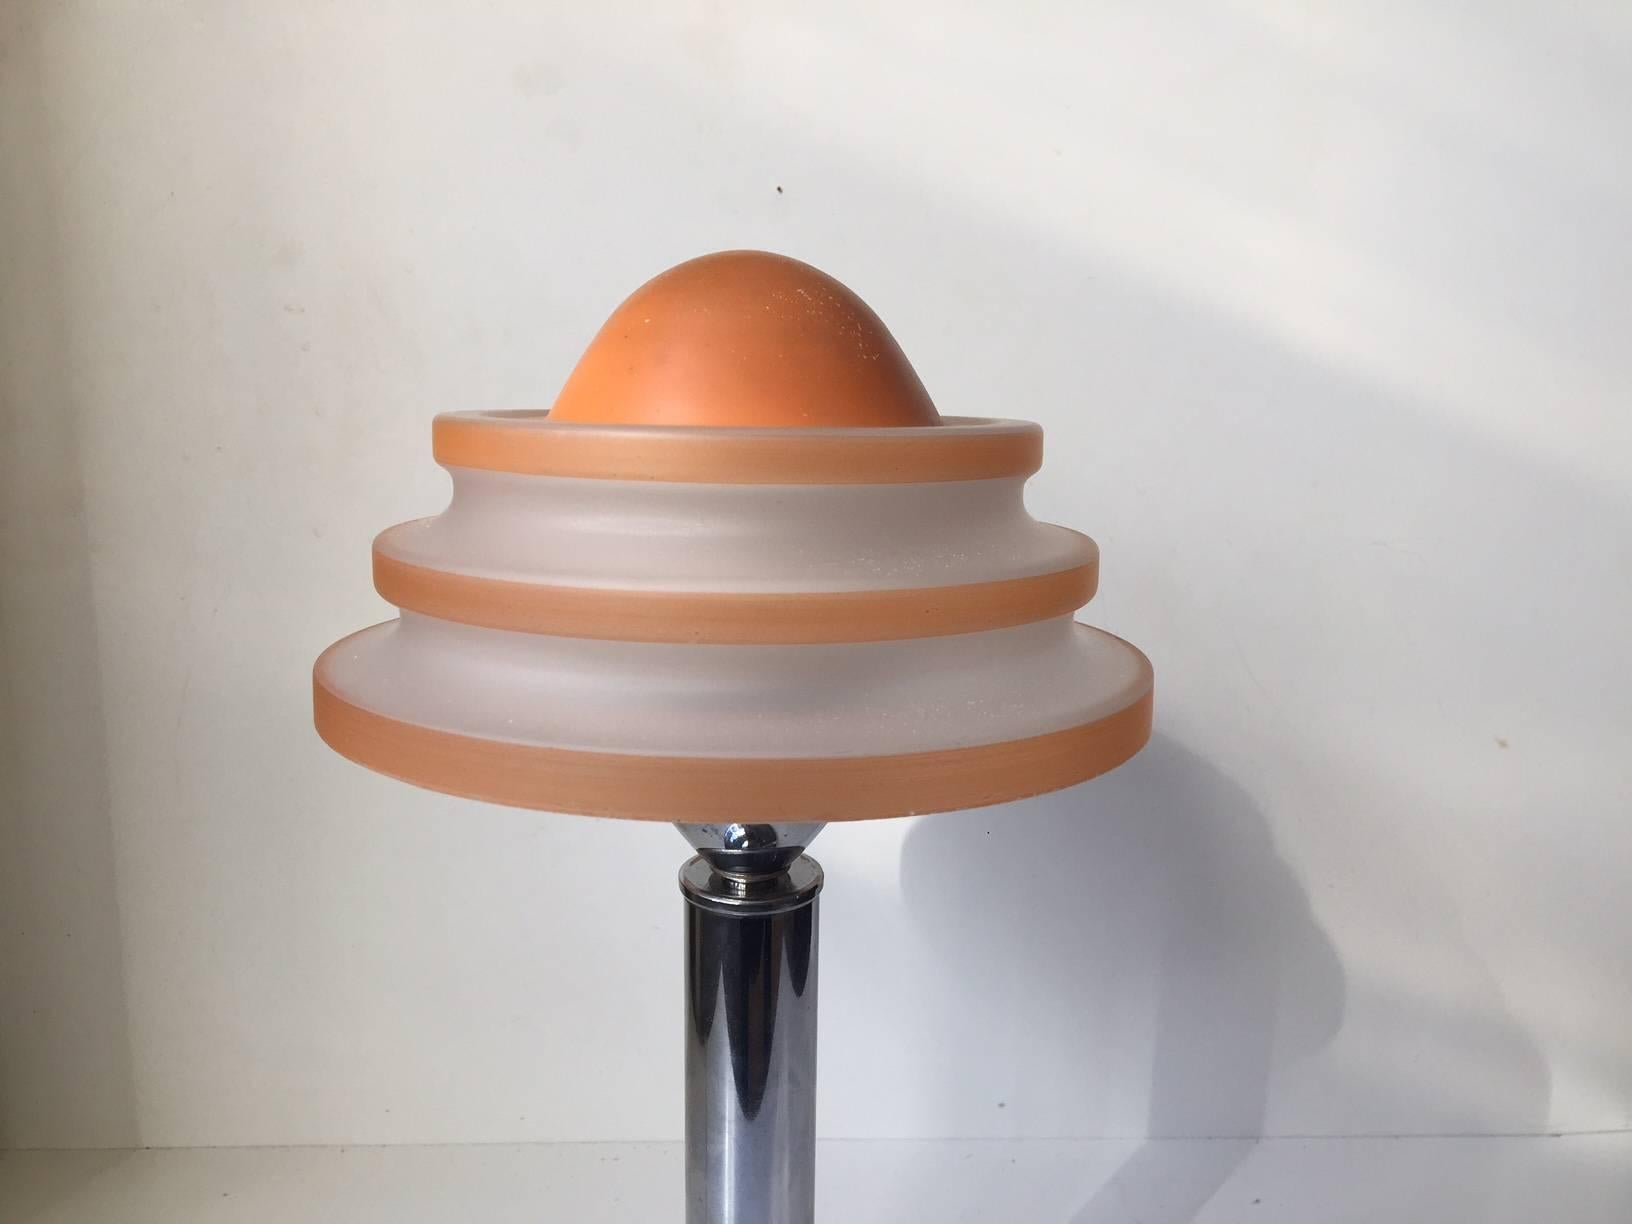 Steel Danish Art Deco Desk Lamp 'Fried Egg' by Fog & Morup, 1930s